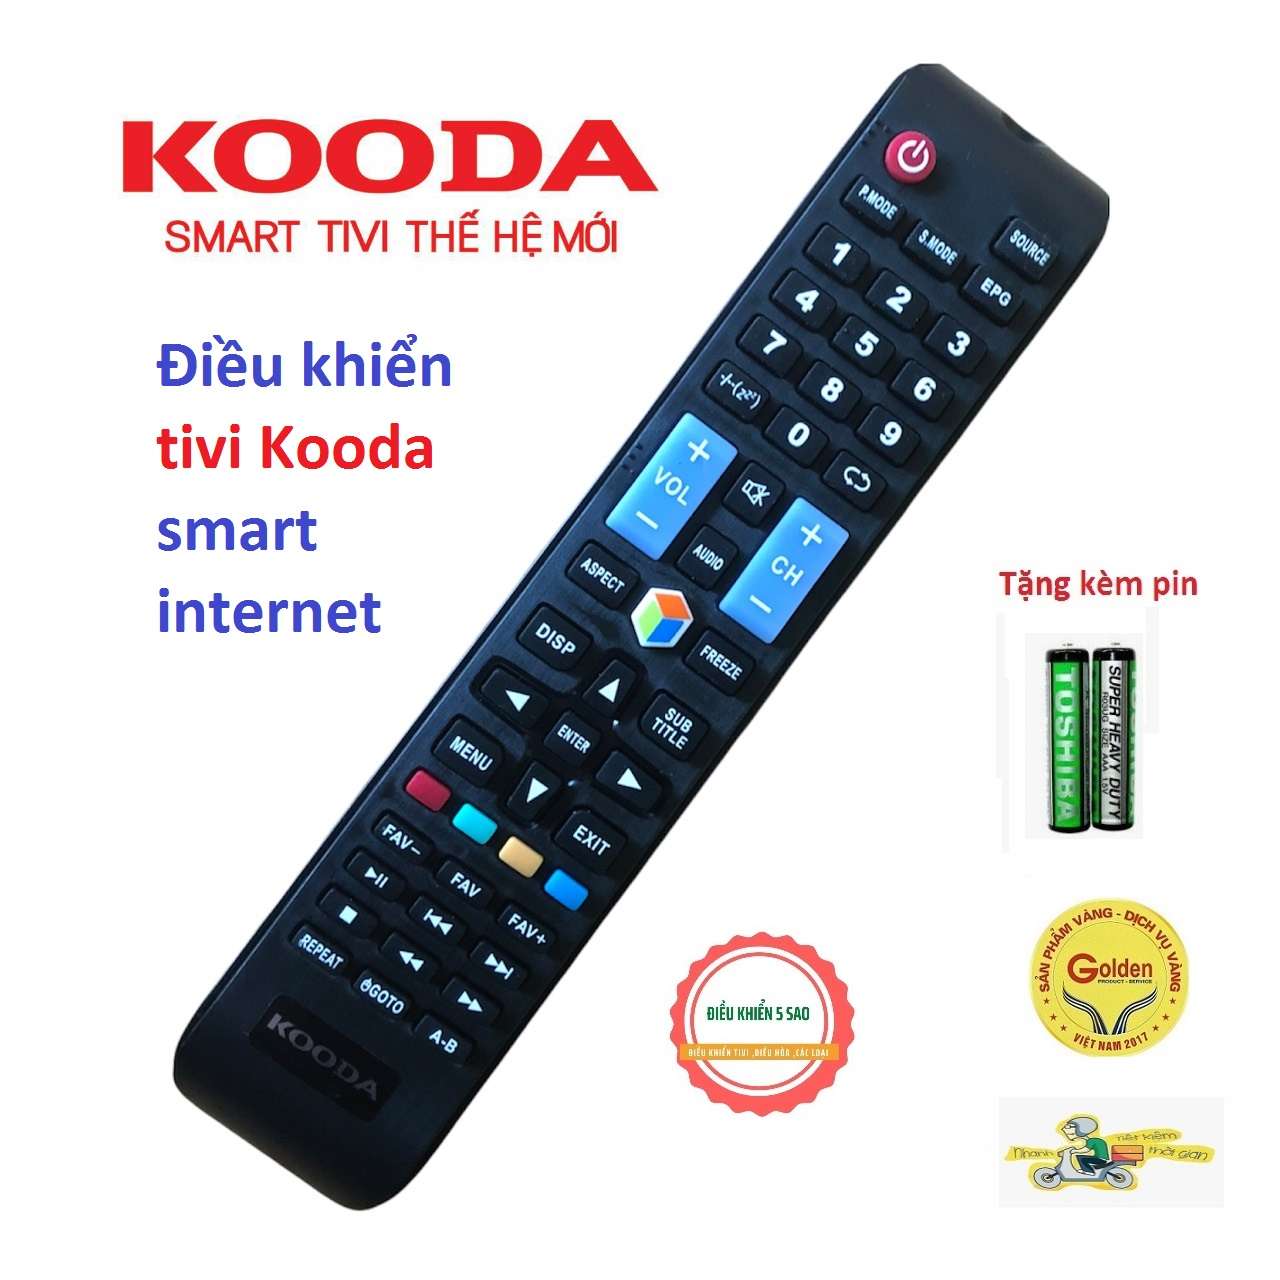 Điều khiển tivi KOODA smart internet loại tốt zin theo máy chất lượng cao - tặng kèm pin chính hãng - Remote TV Kooda thông minh vào mạng internet - Đầu bấm Kooda smart vào mạng internet zin chính hãng